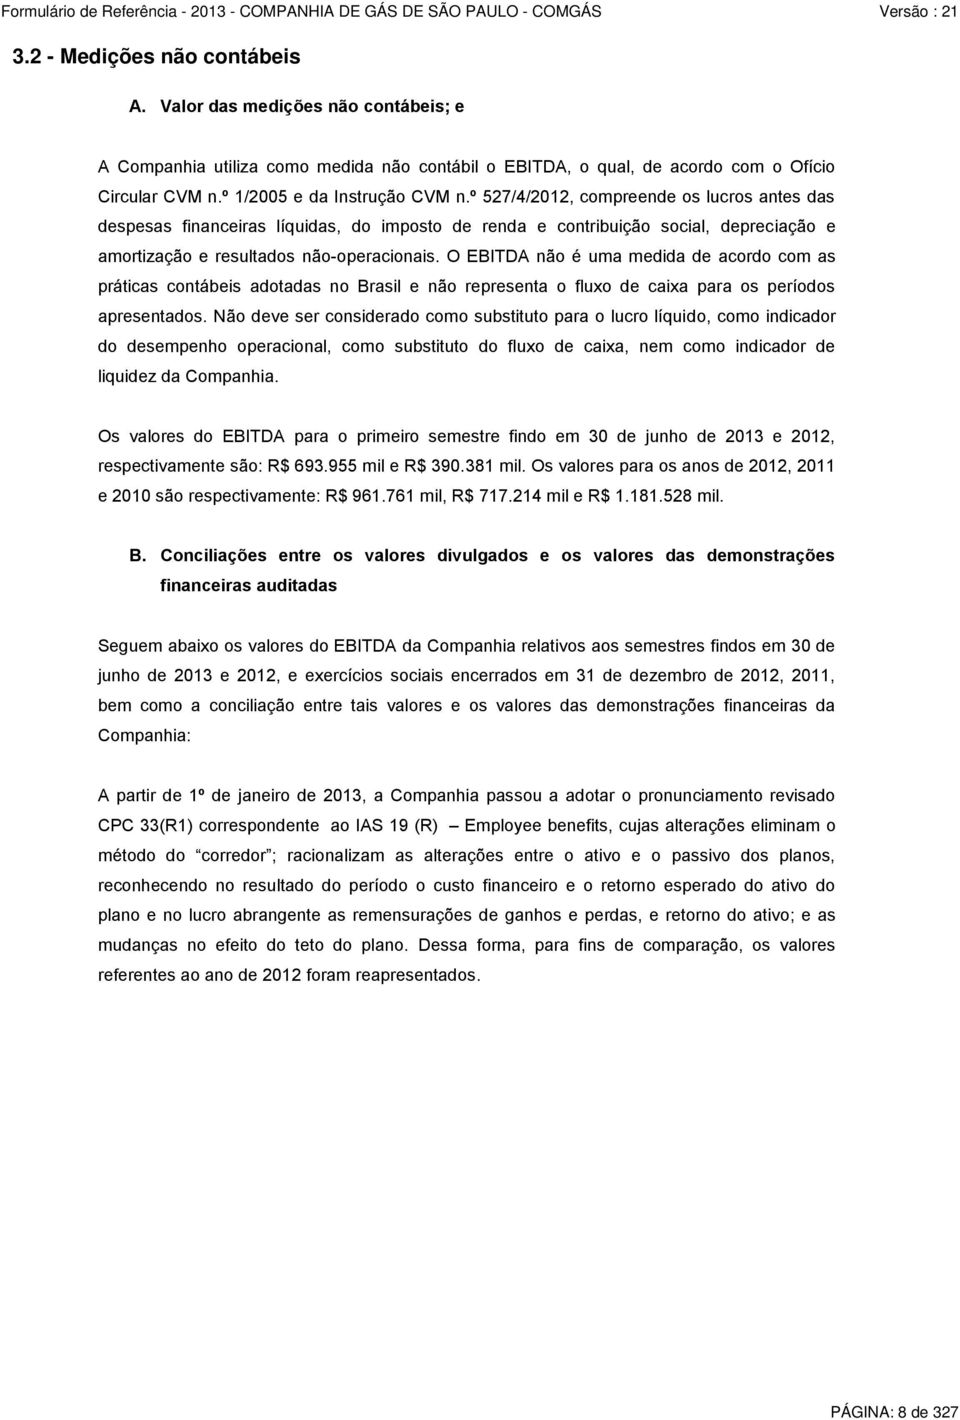 O EBITDA não é uma medida de acordo com as práticas contábeis adotadas no Brasil e não representa o fluxo de caixa para os períodos apresentados.